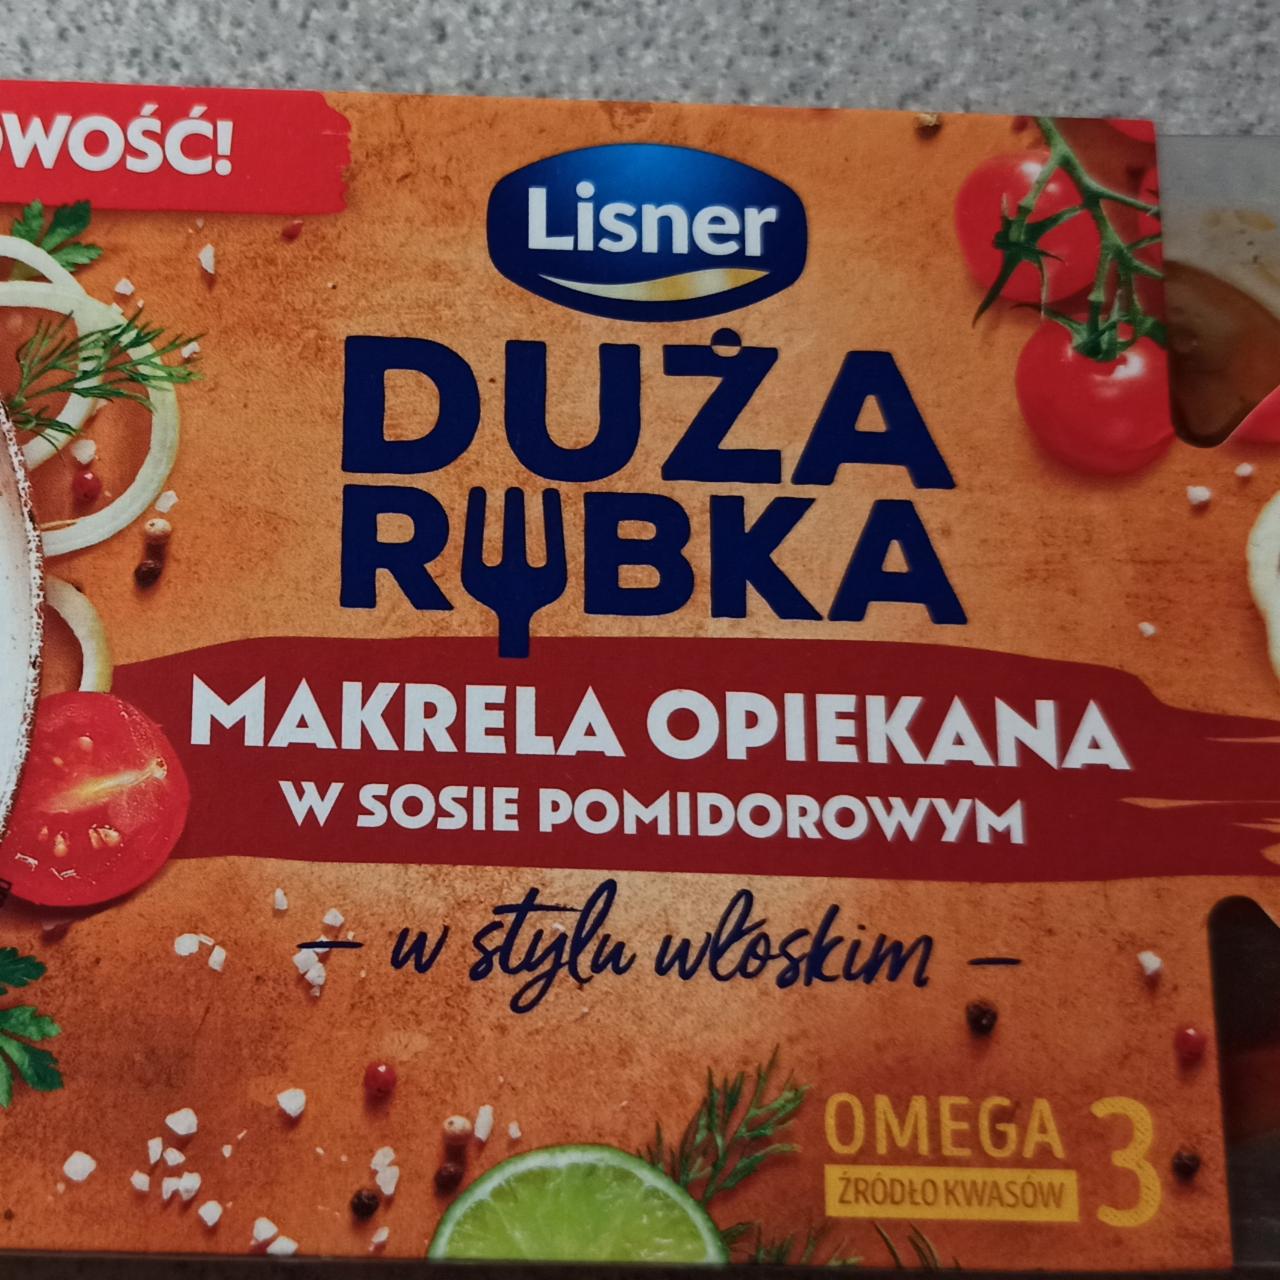 Fotografie - Duża Rybka Makrela opiekana w sosie pomidorowym w stylu włoskim Lisner